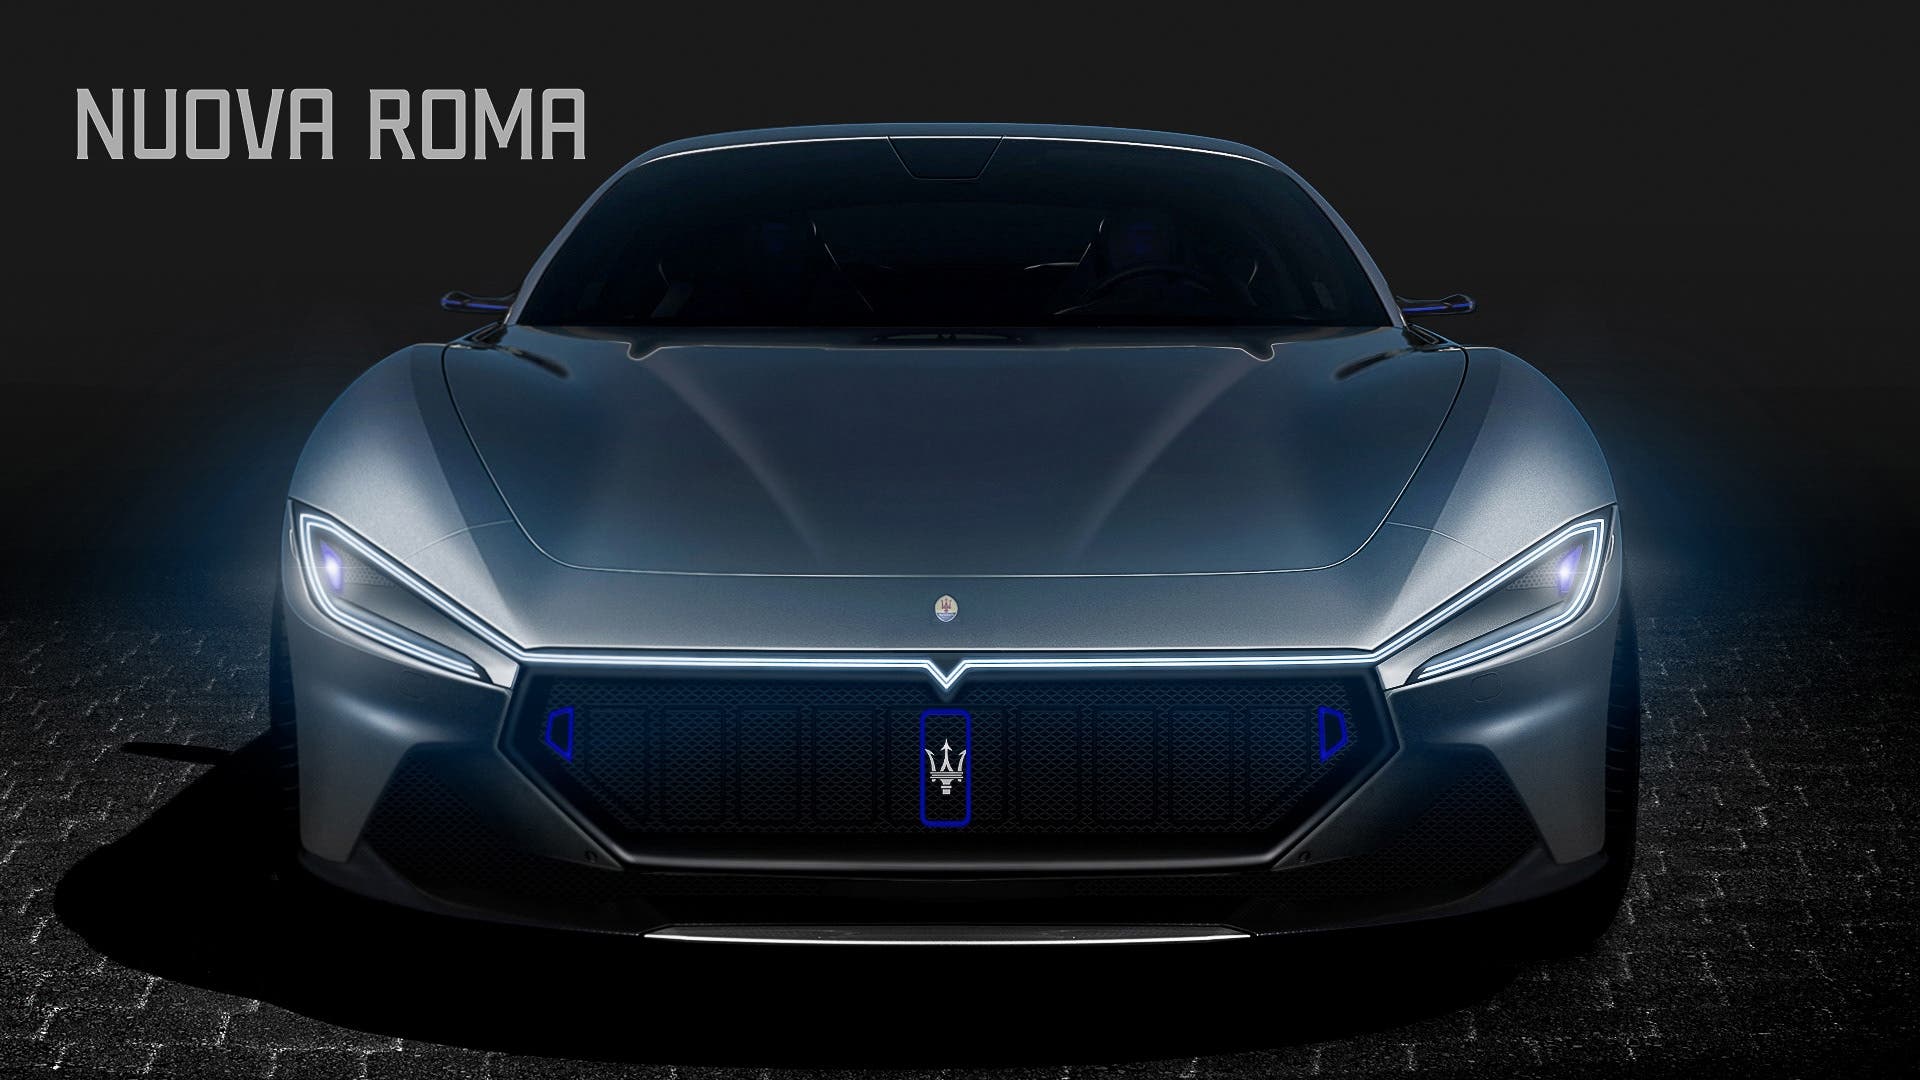 Nuova Maserati GranTurismo immaginata con inflluenze stilistiche della